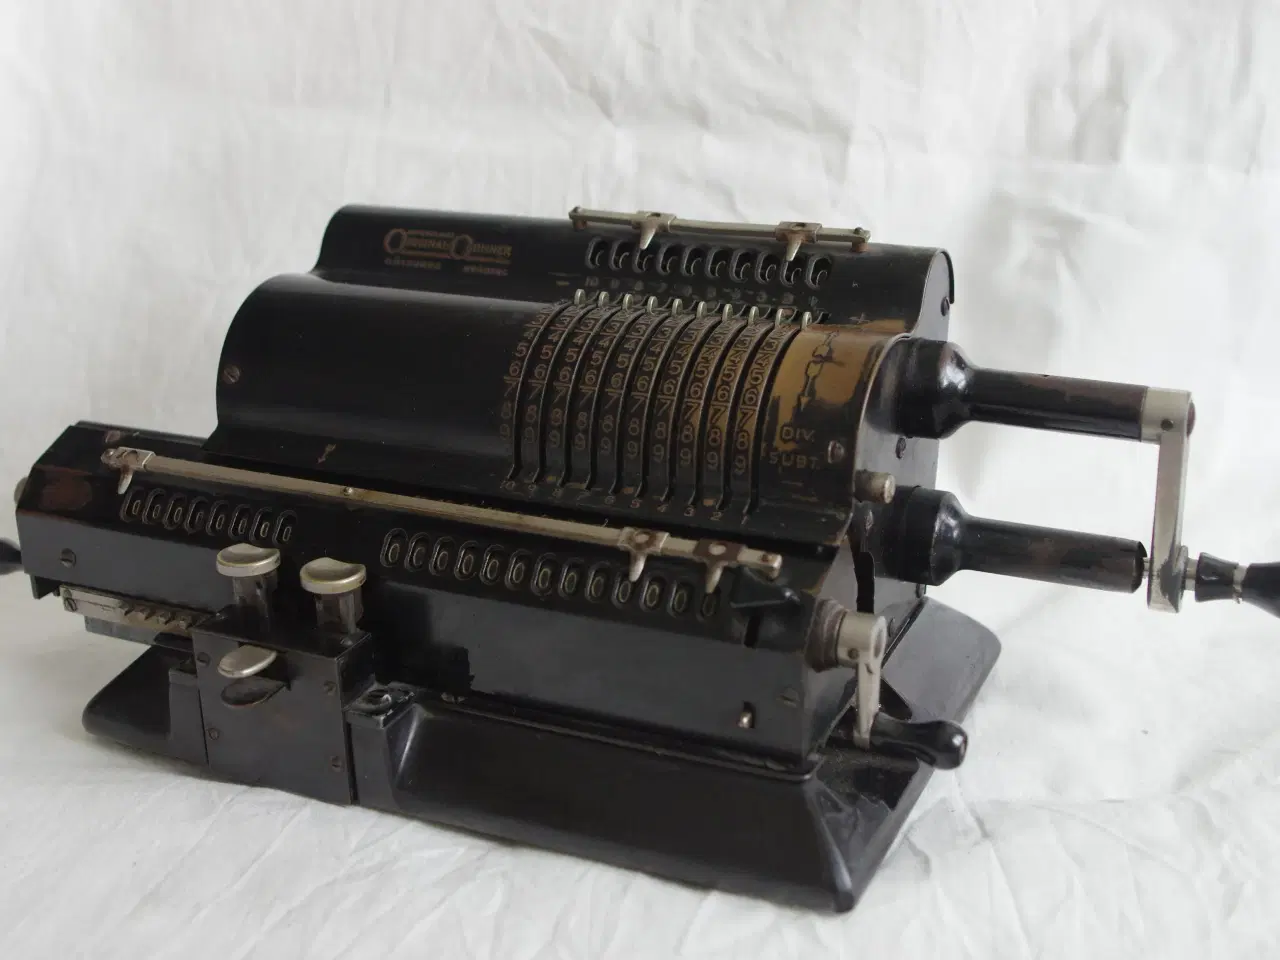 Billede 1 - Original-Odhner model 7 regnemaskine